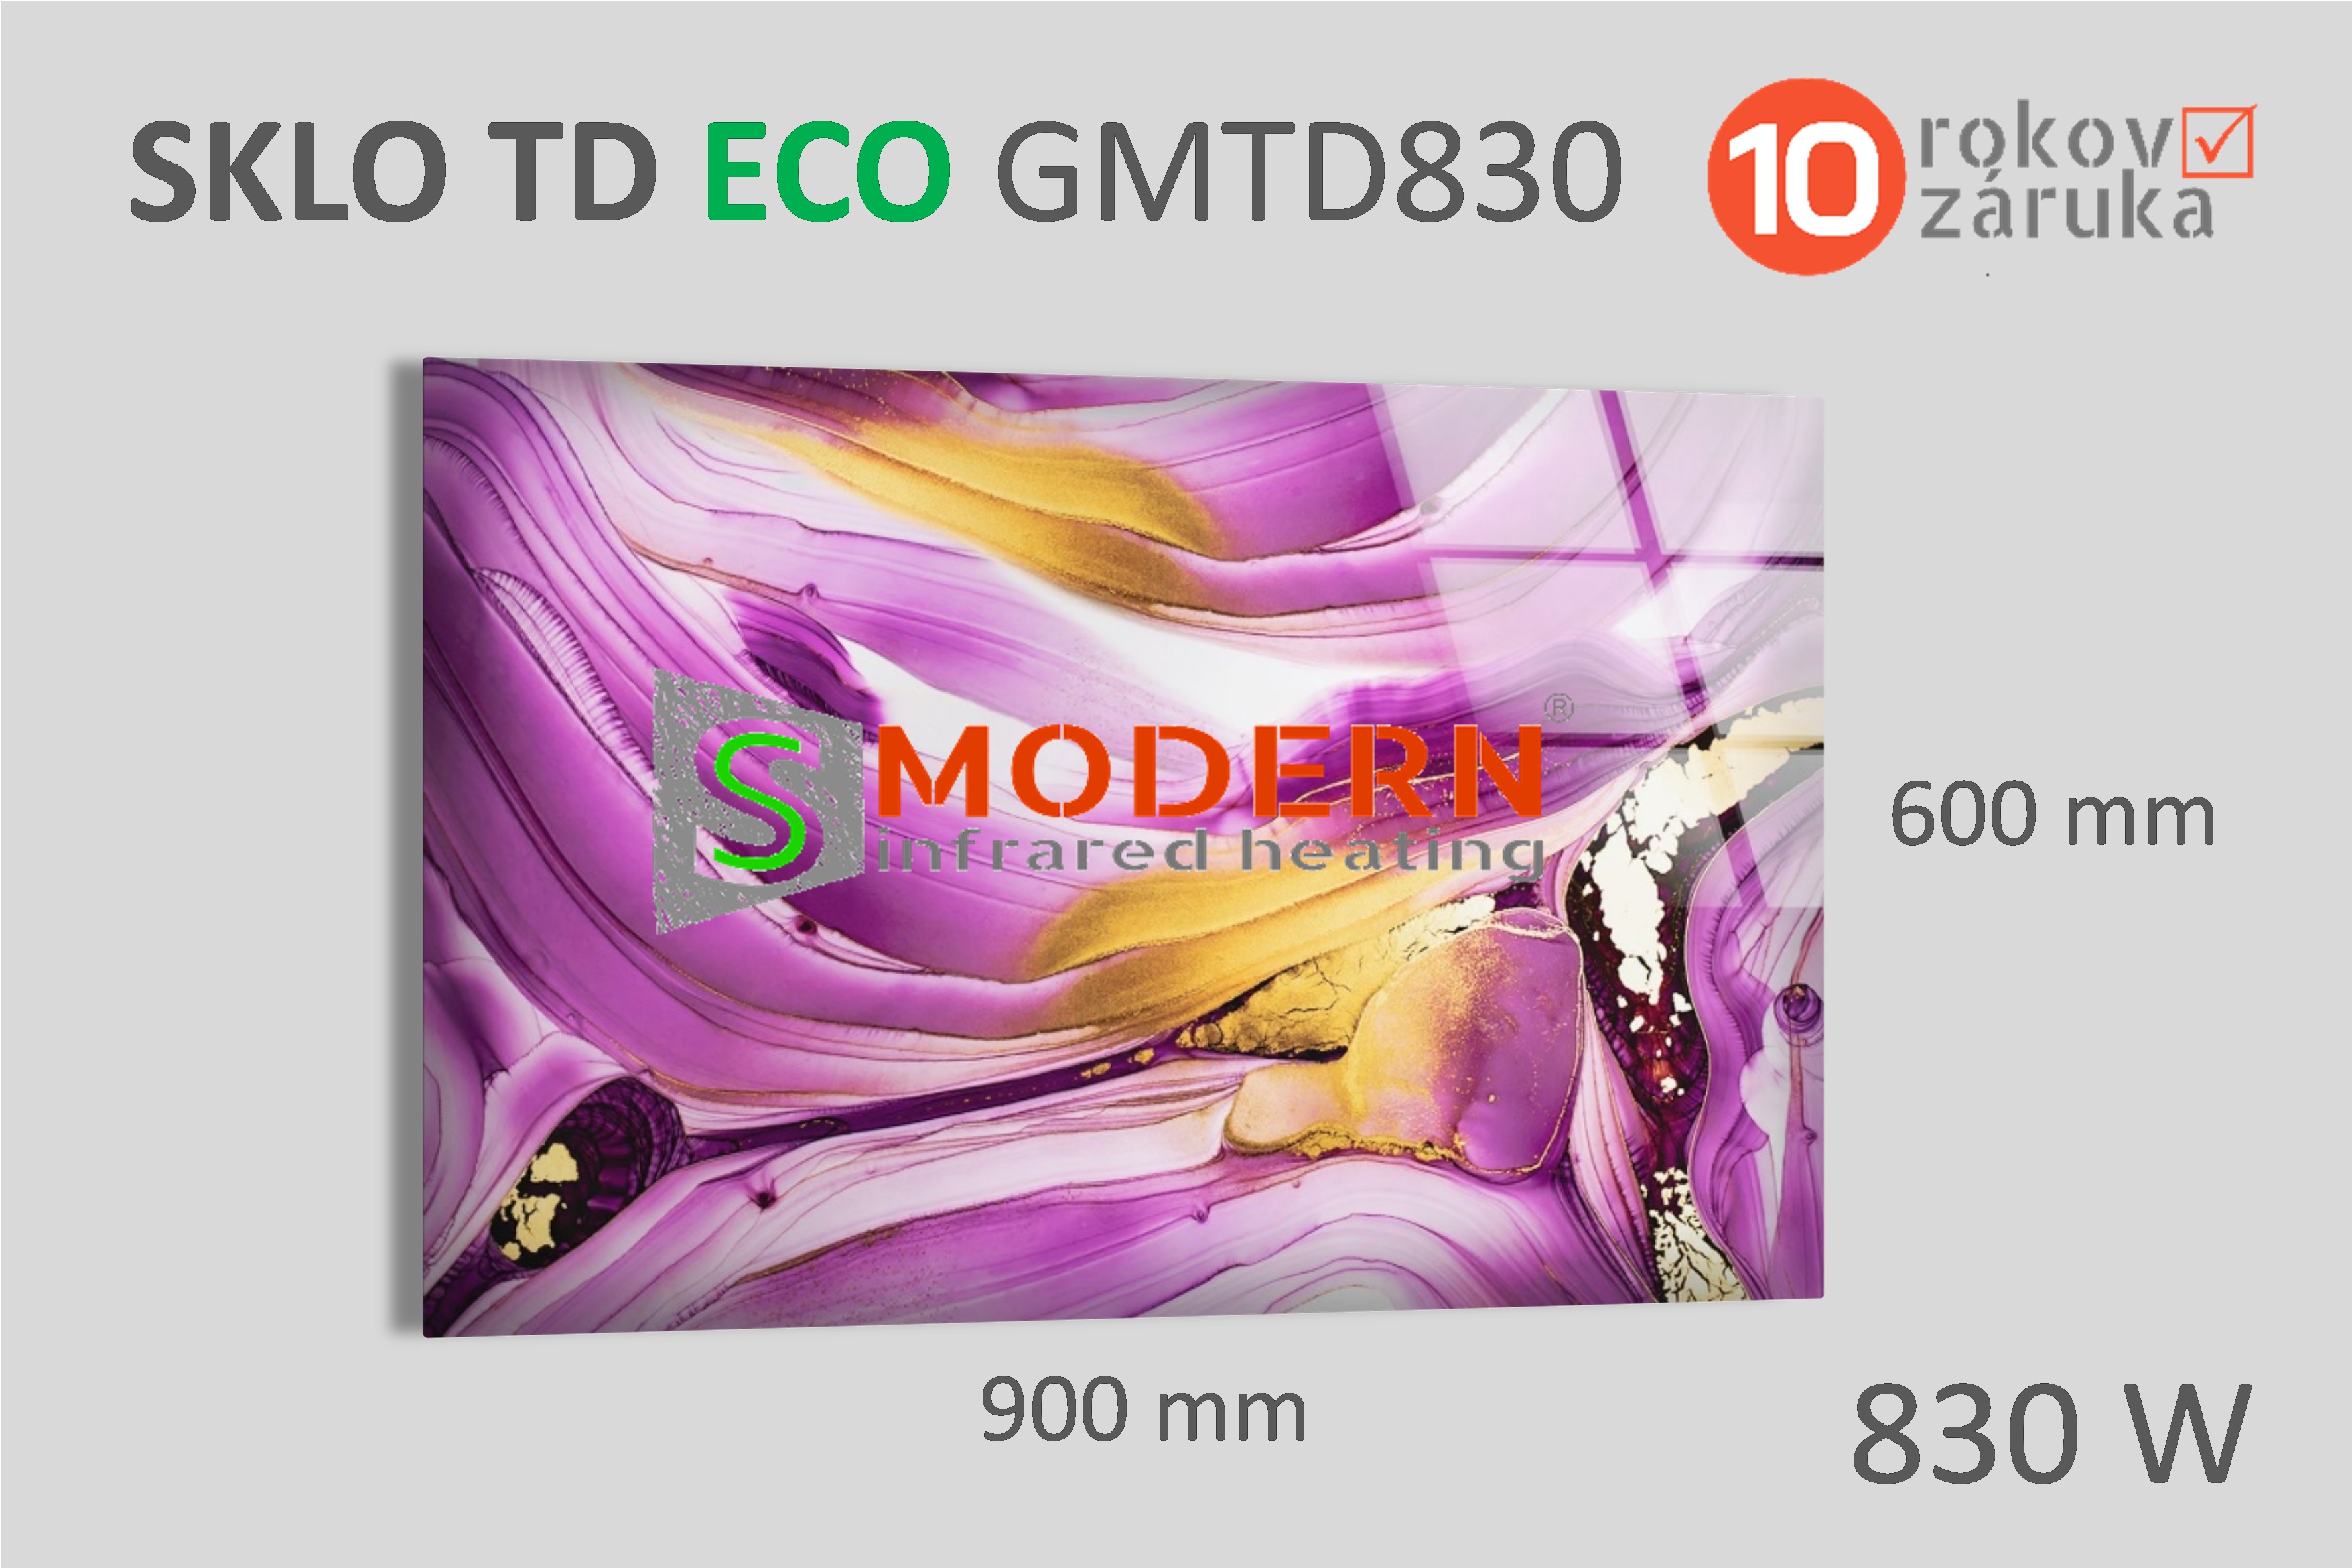 Sklenený infrapanel SMODERN® TD ECO GWTD830 / 830 W, obrazový